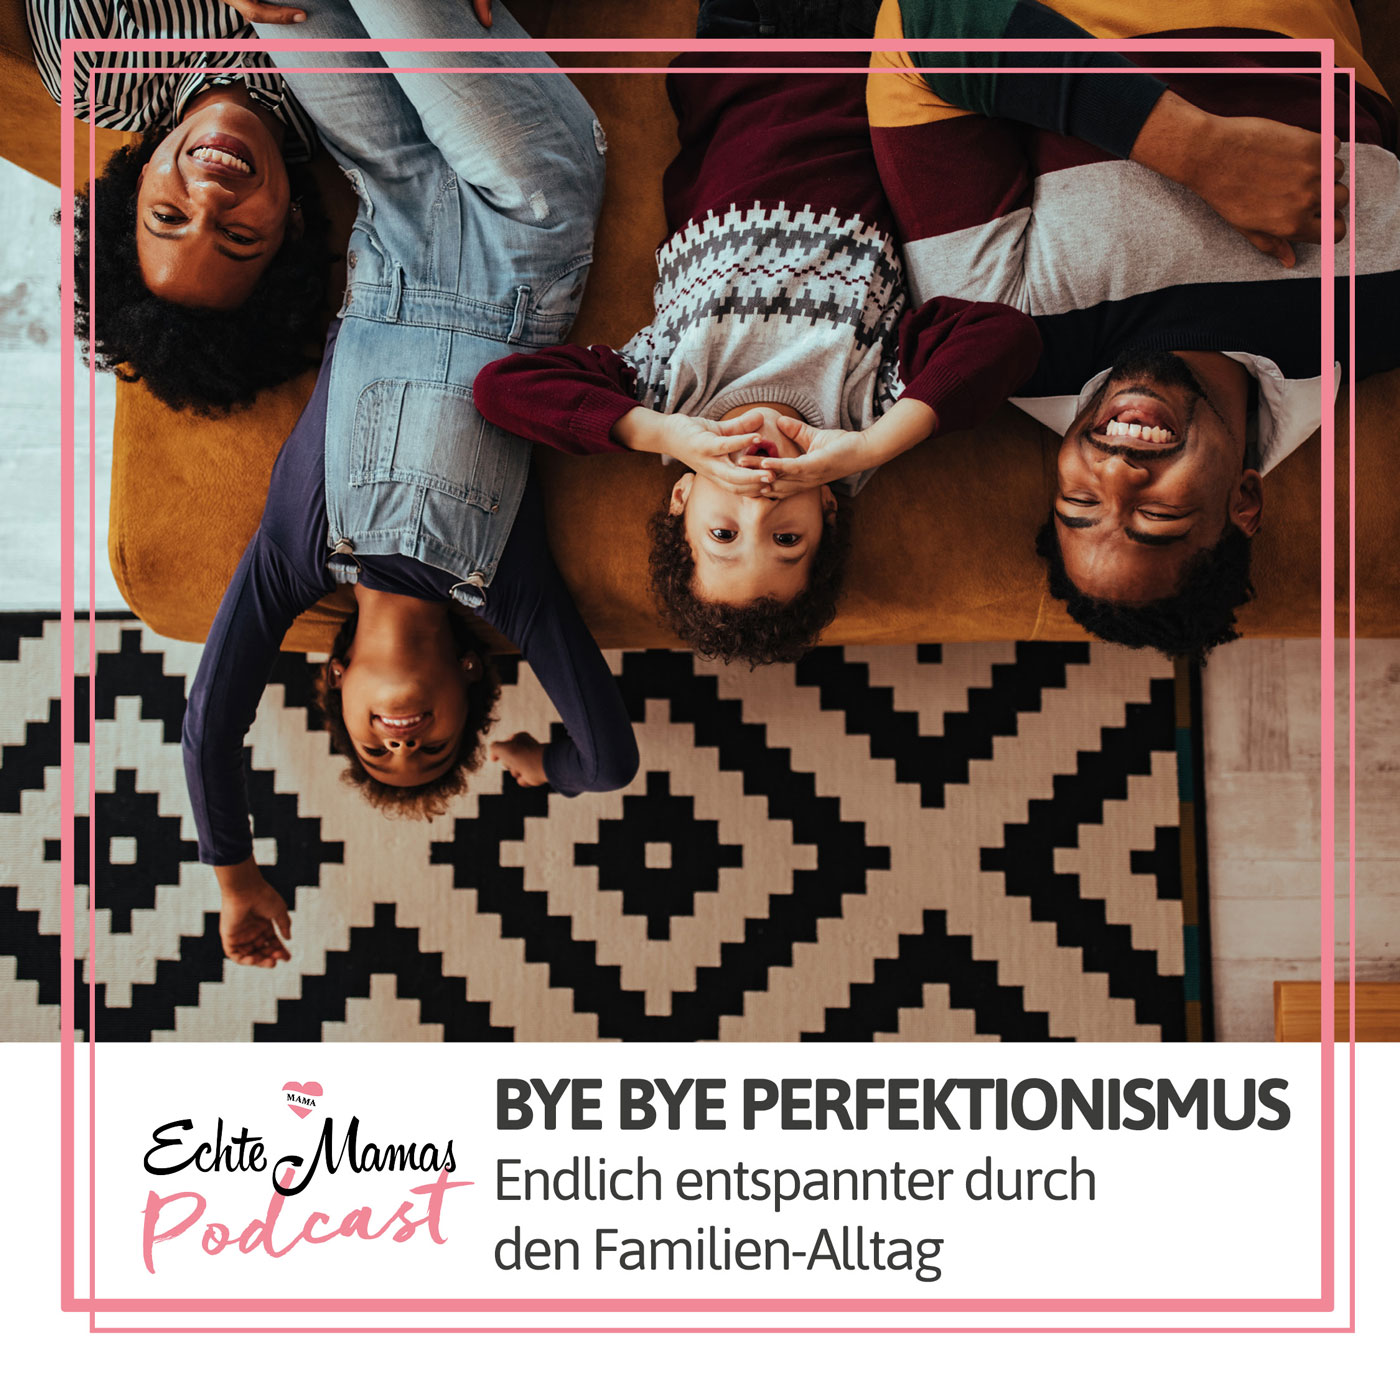 Bye bye Perfektionismus – für mehr Entspannung im Familienalltag